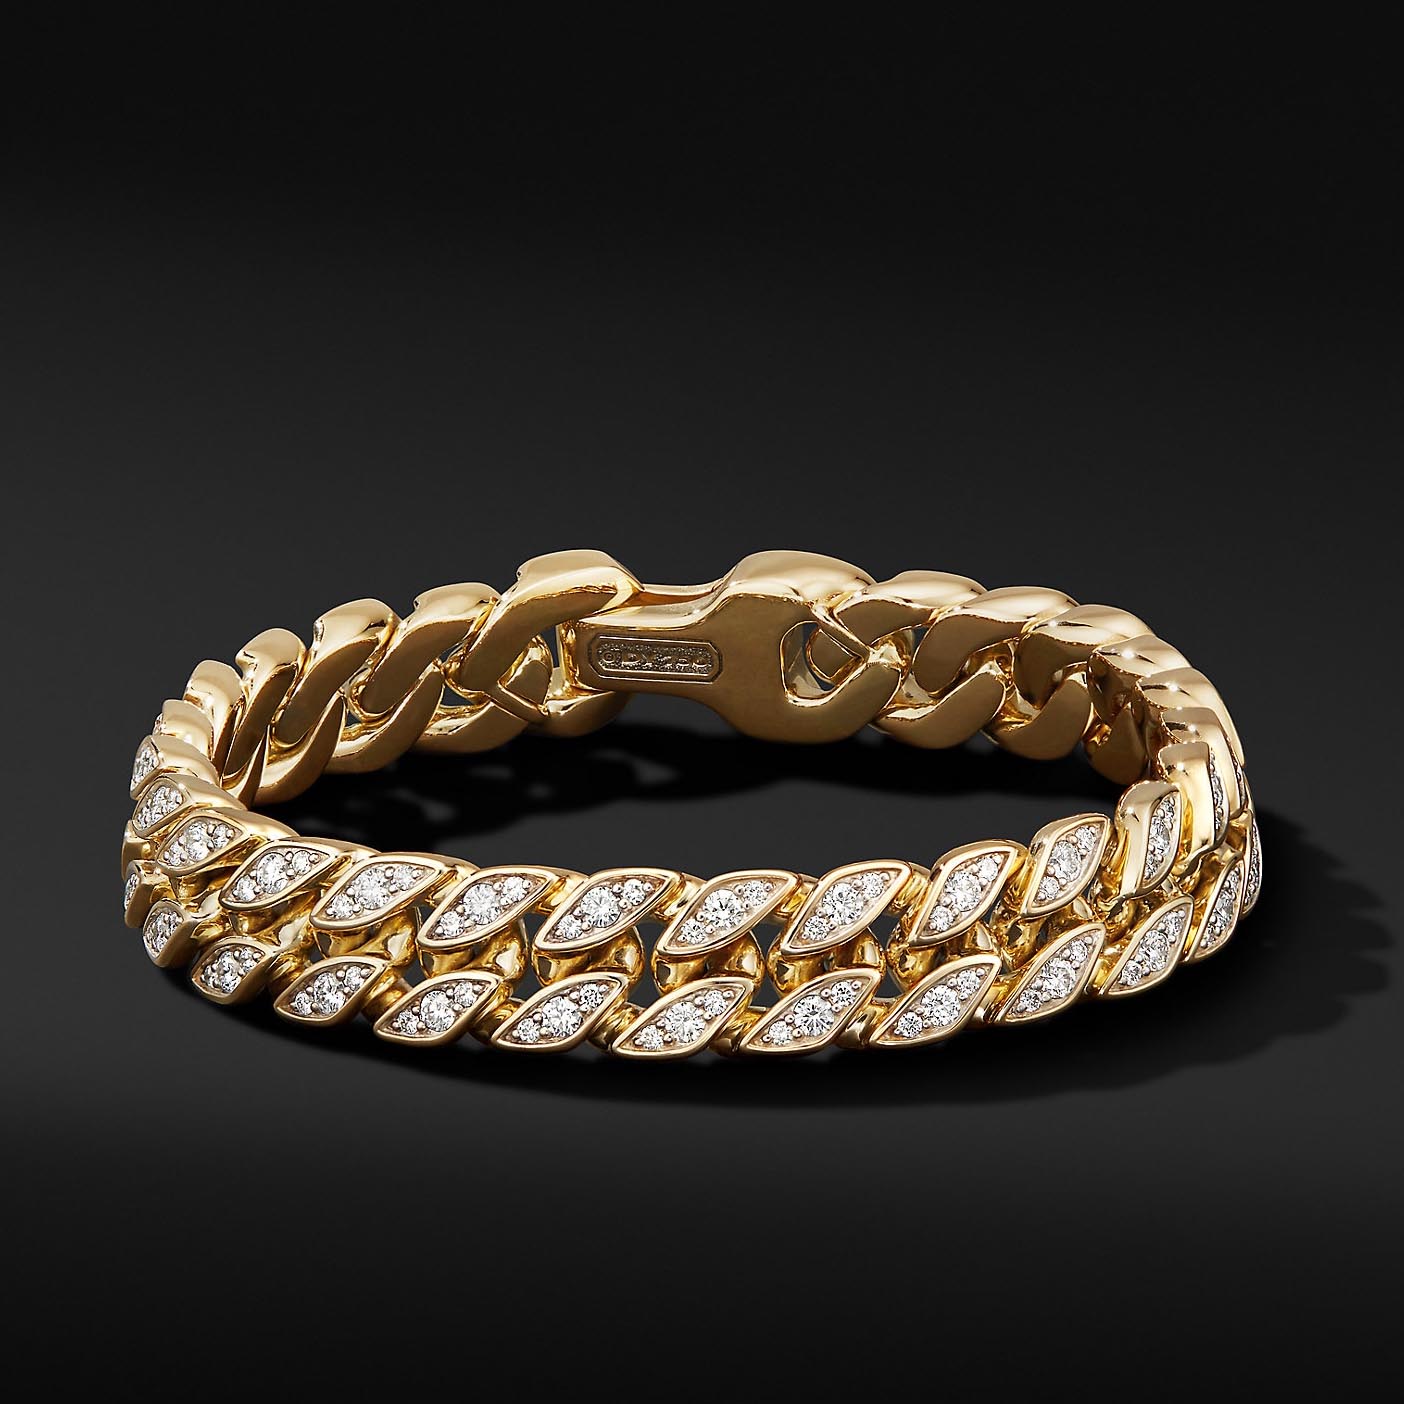 Bracciale OEM in oro giallo 18 carati all'ingrosso su argento che realizza gioielli personalizzati con forma di incisione di gioielli OEM / ODM